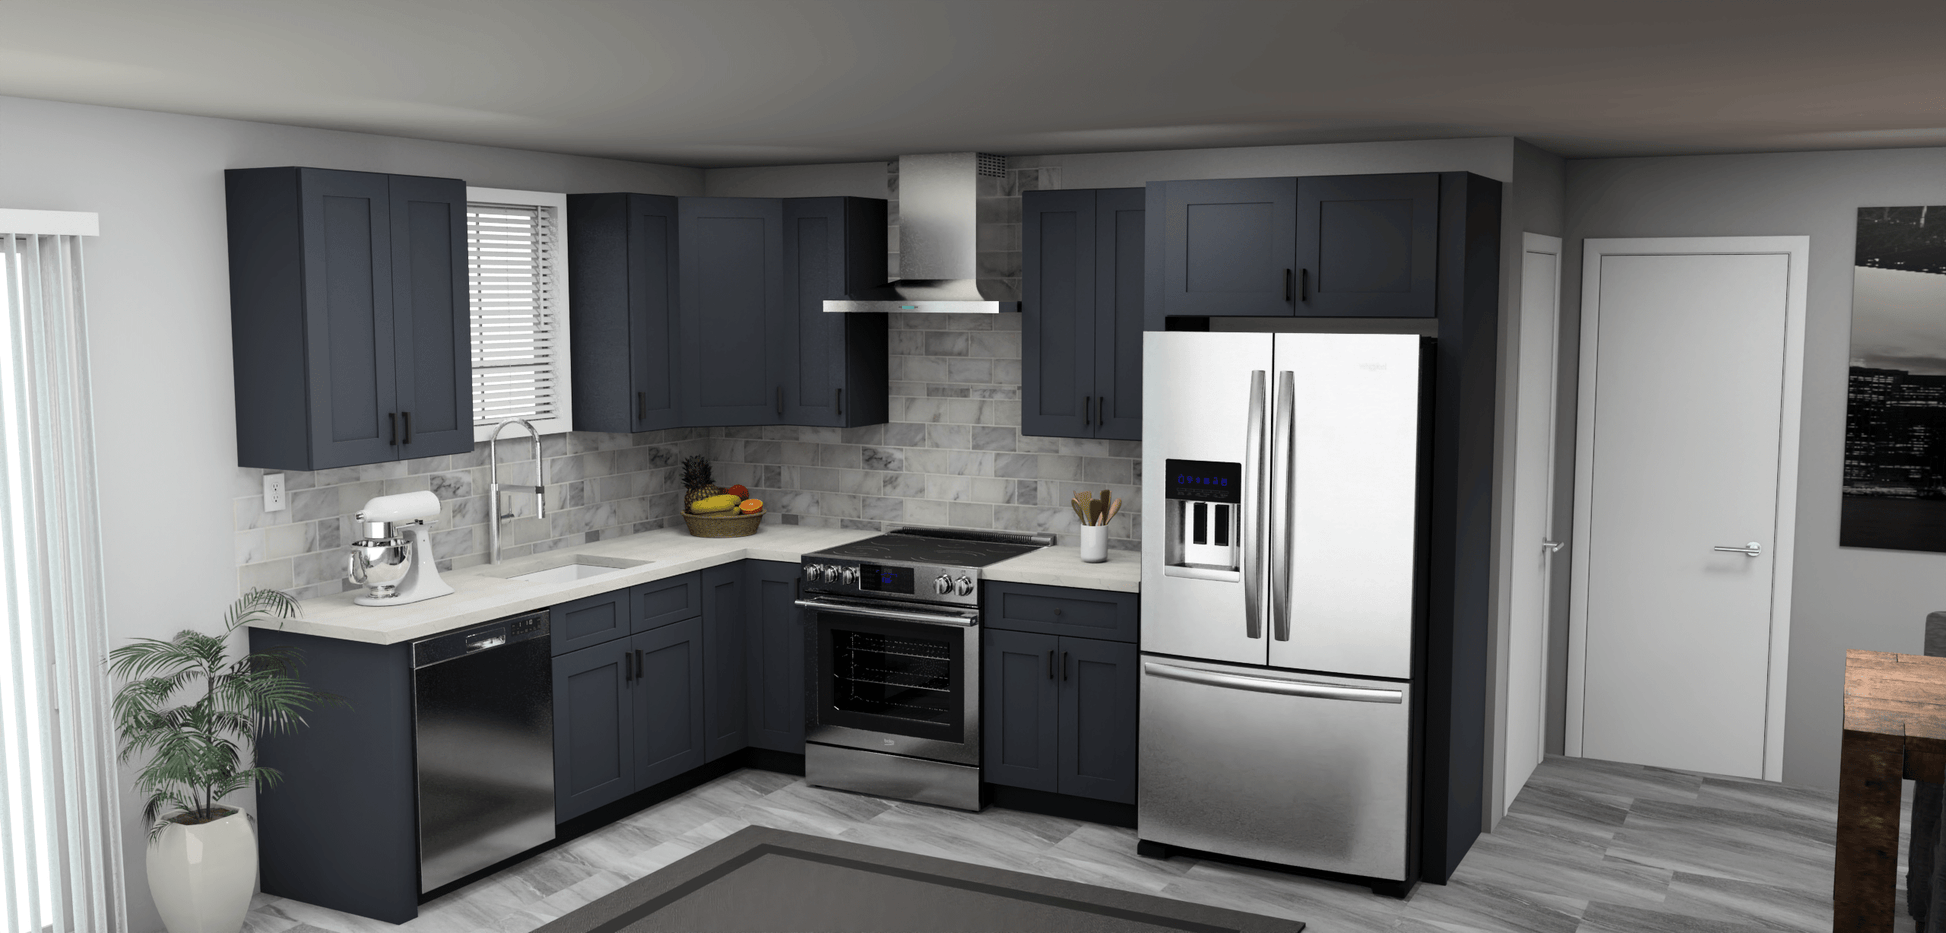 Fabuwood Allure Galaxy Indigo 8 x 11 L Shaped Kitchen Main Layout Photo